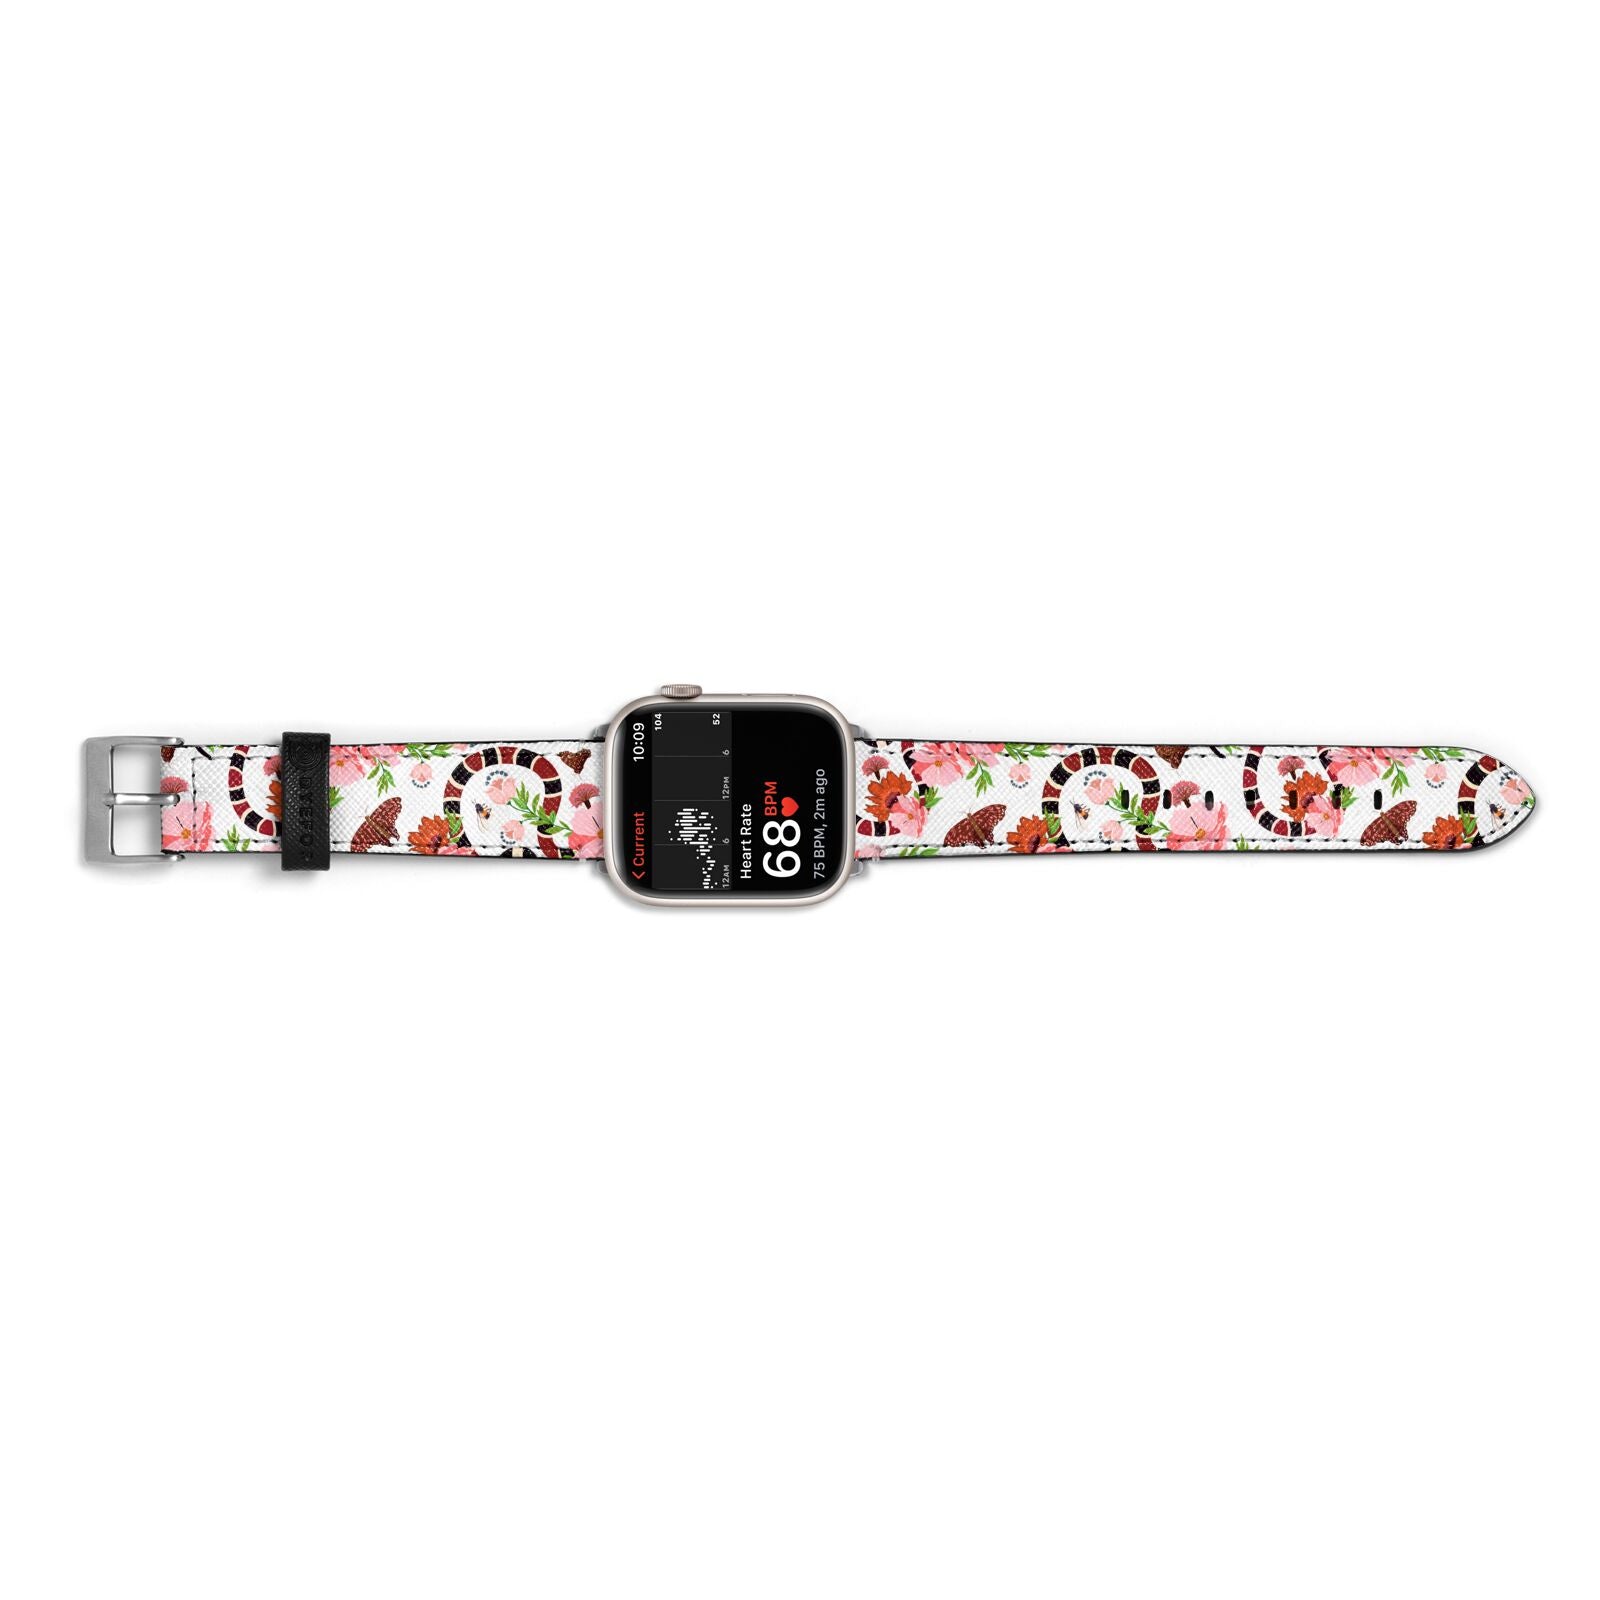 Floral Snake Apple Watch Strap Size 38mm Landscape Image Silver Hardware